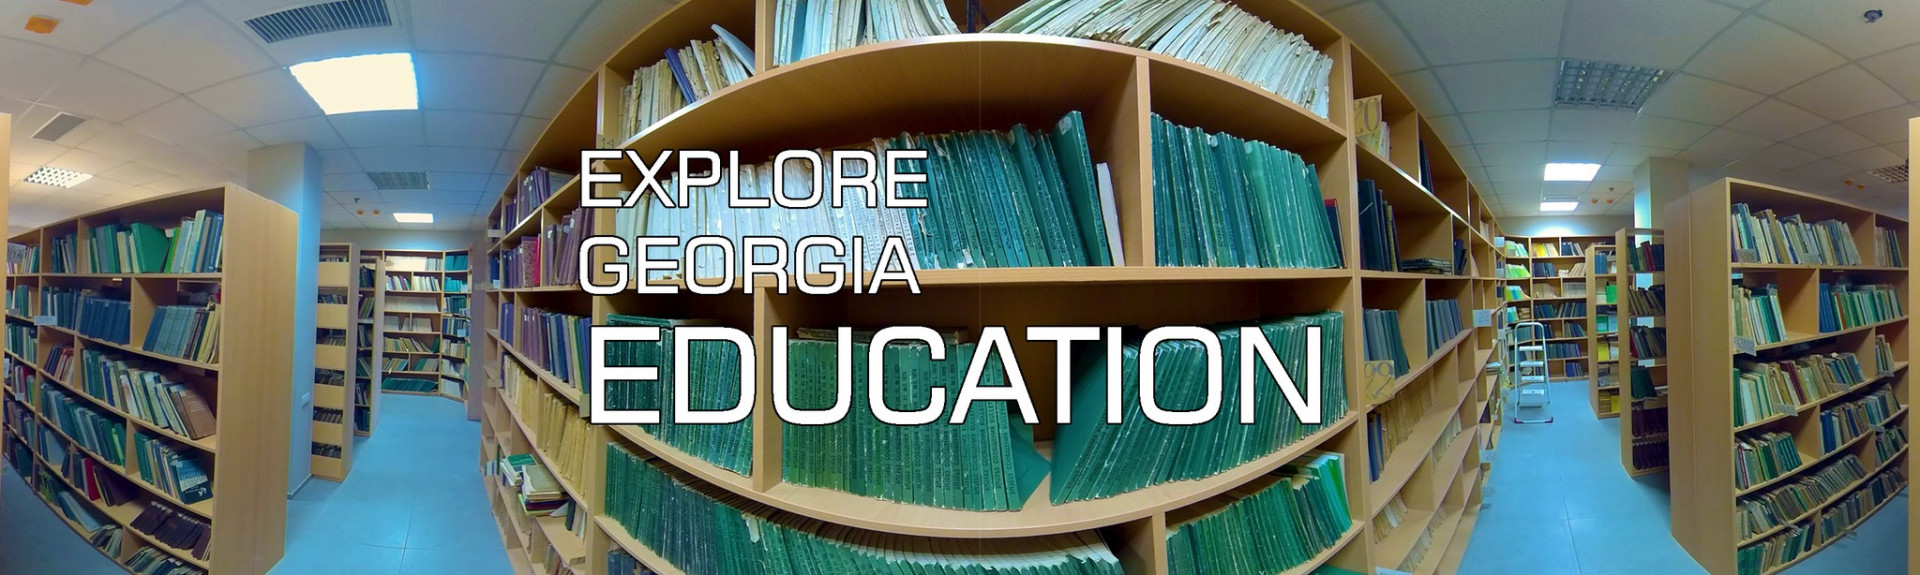 Explore Georgia - Education